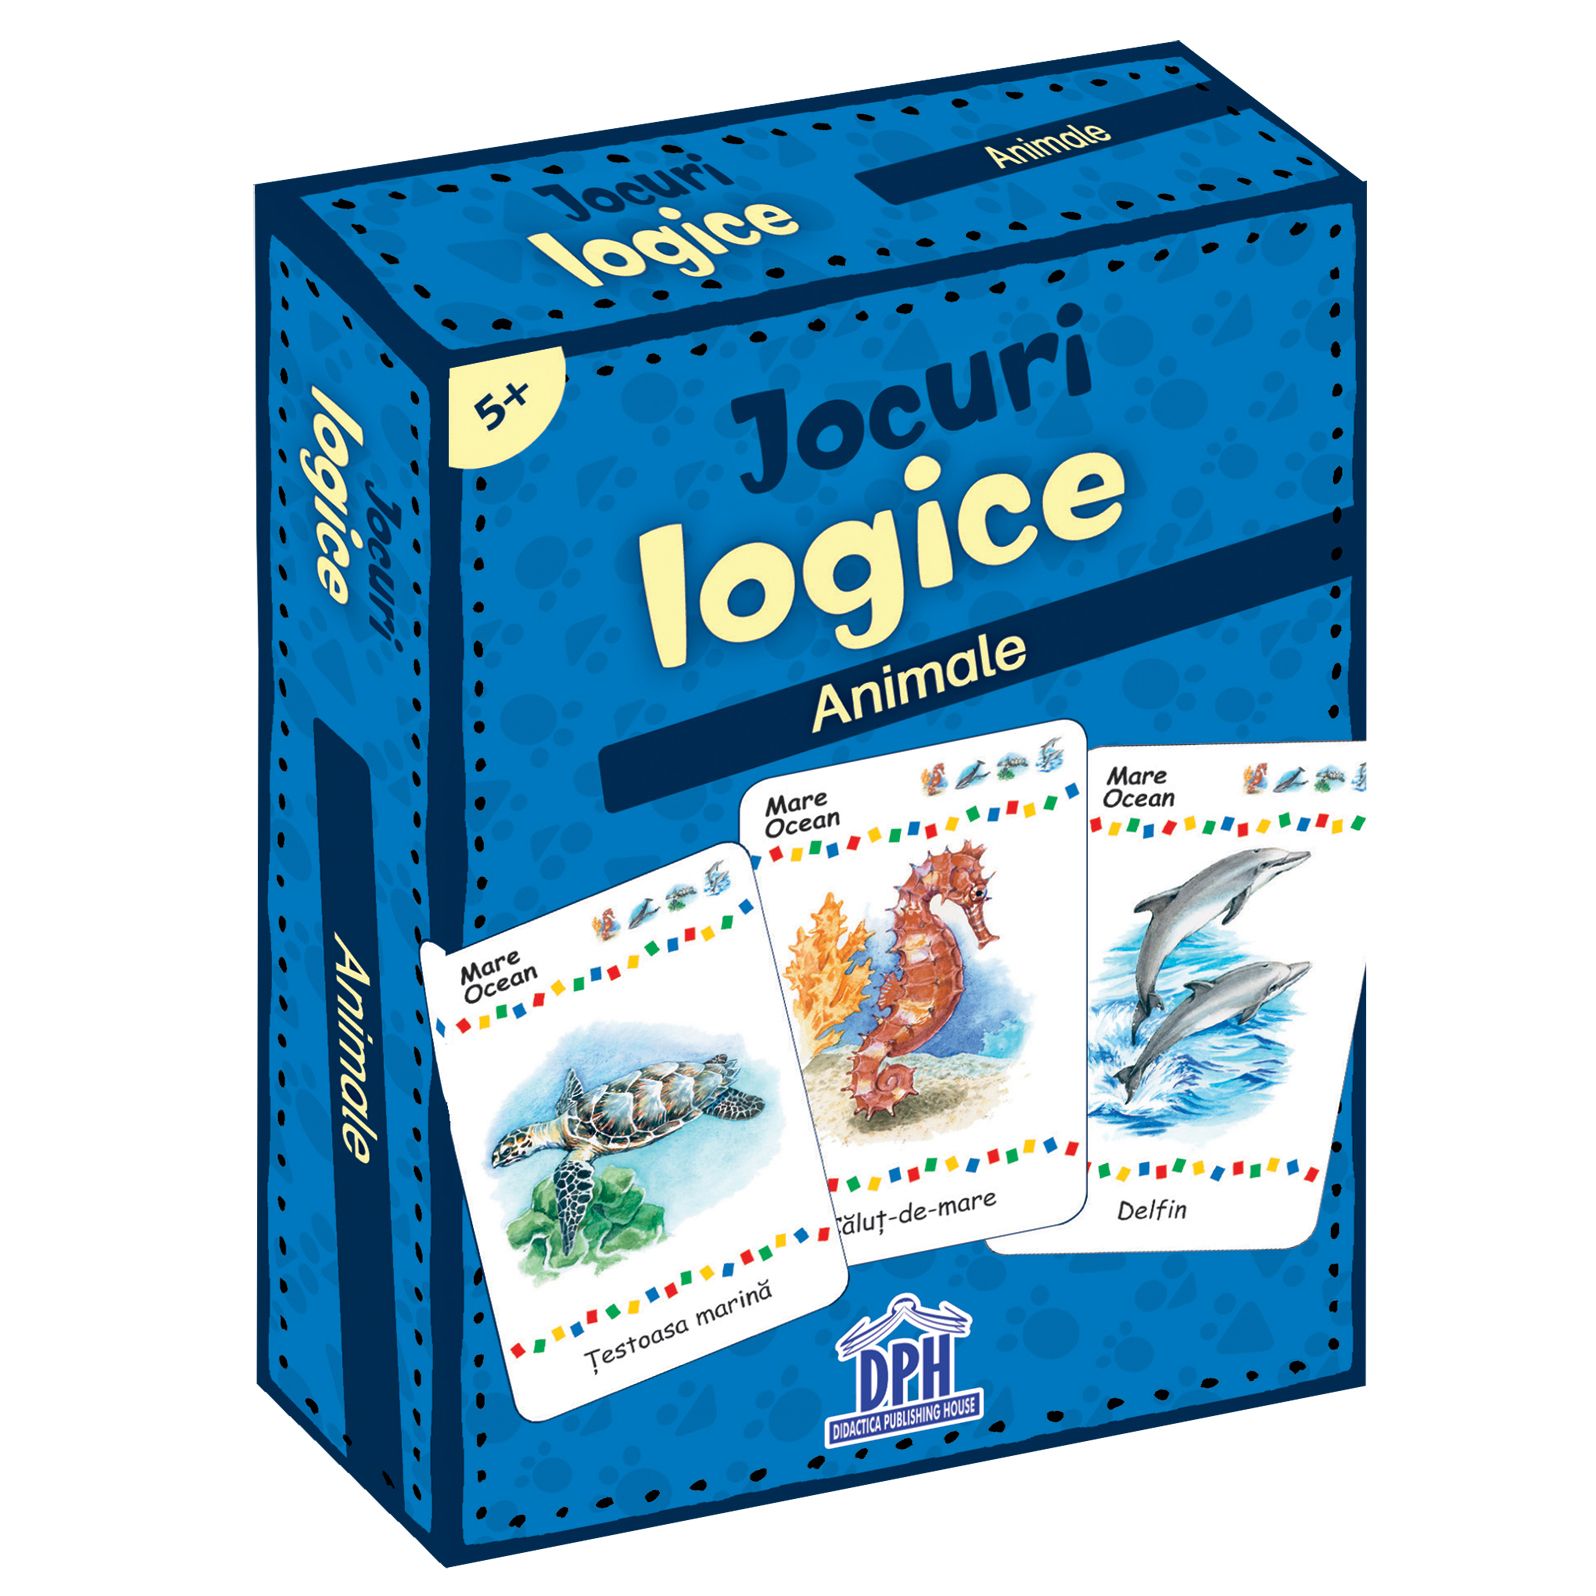 Jocuri logice – Animale | carturesti.ro Carte